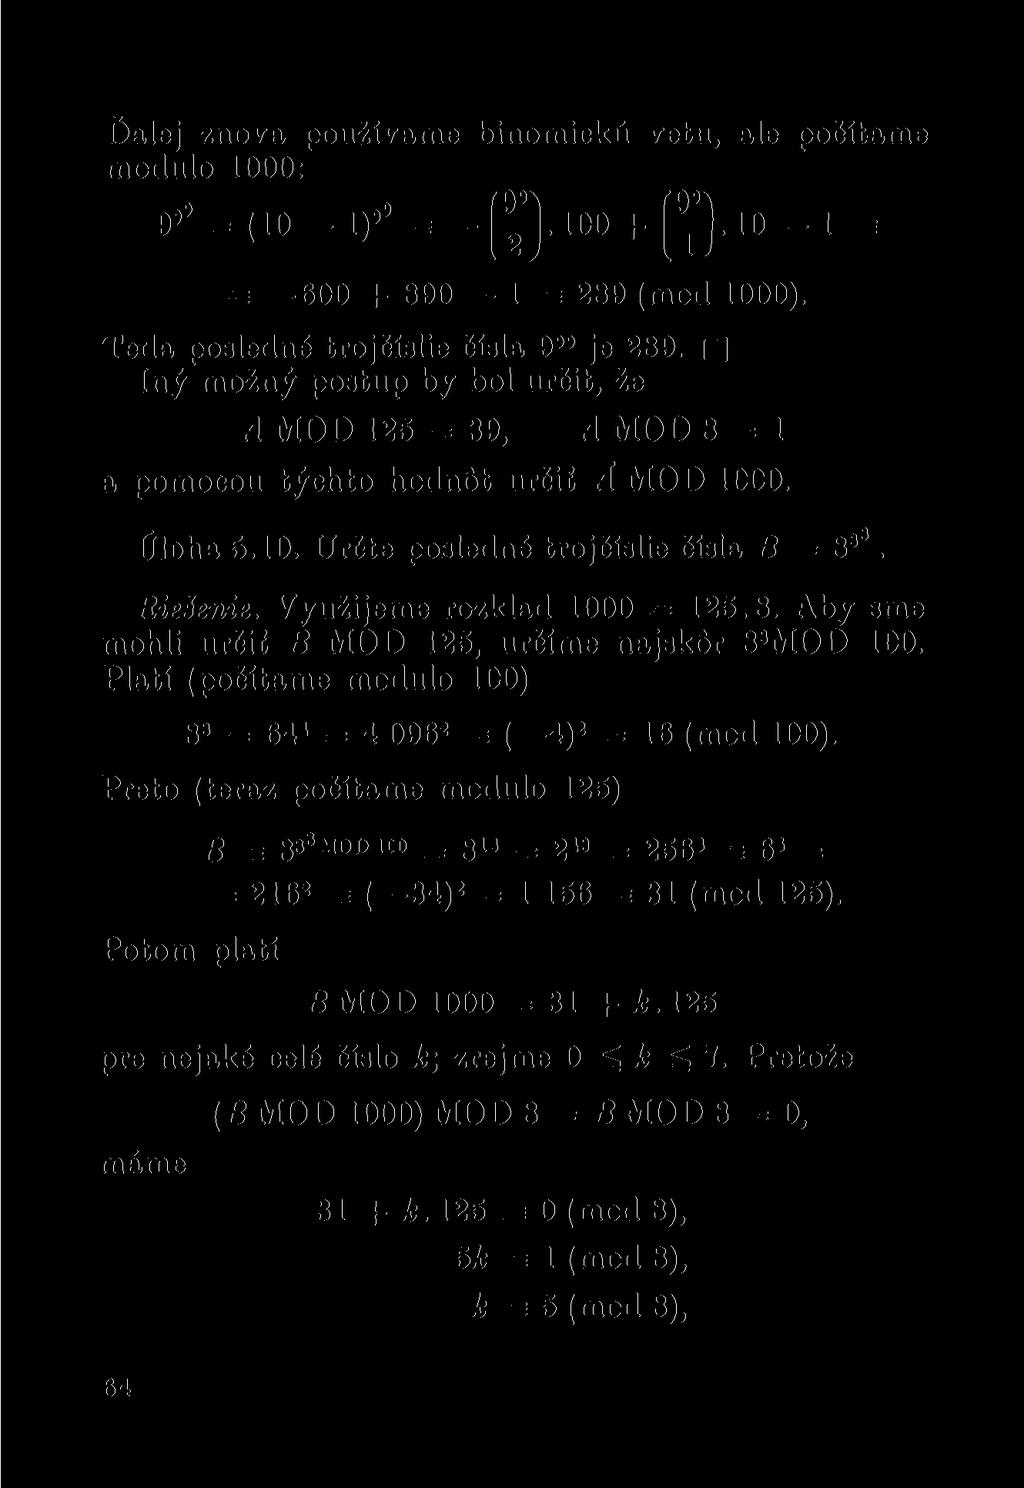 f)alej znova používáme binomická vetu, ale počítáme modulo 1000: 9»' = (10-1)* = -( 9 J]. 100 + 10 1 = = 600 + 890 1 = 289 (mod 1000). Teda posledné trojčíslie čísla 9»» je 289.